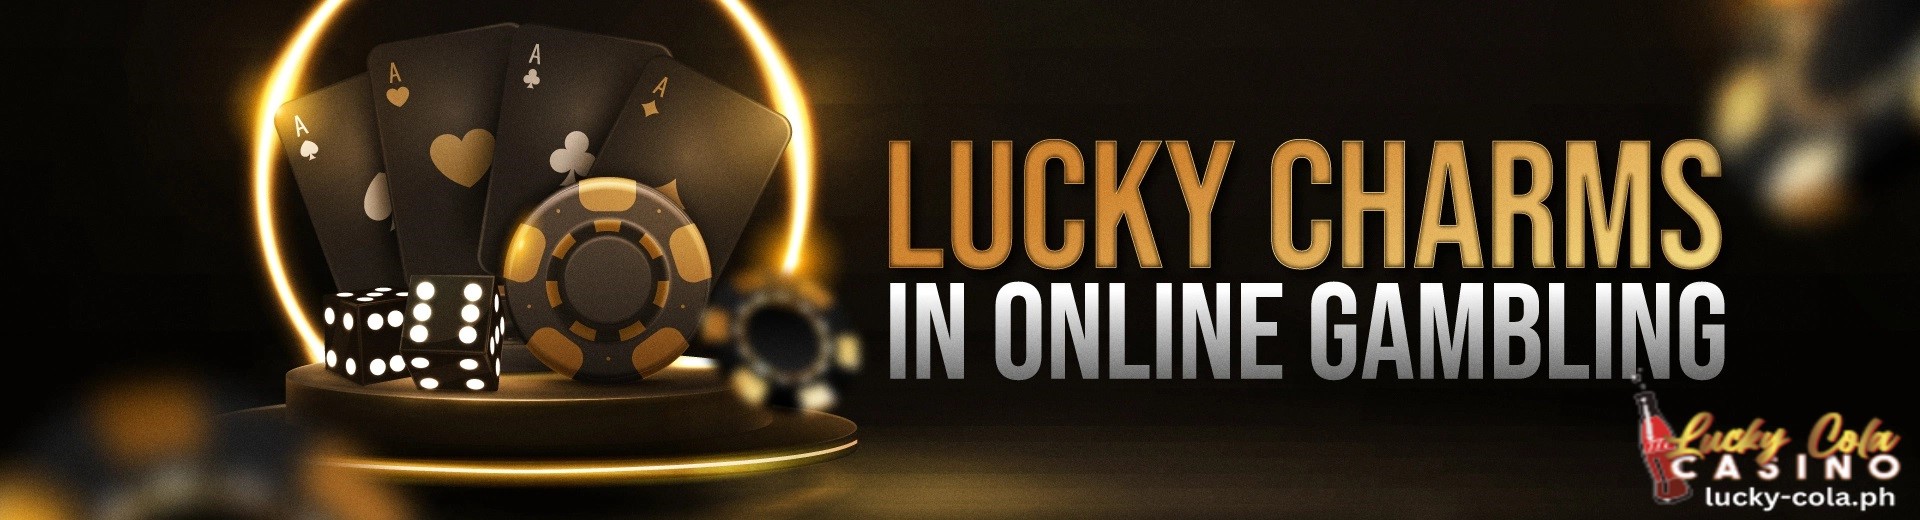 Online Casino Lucky Charms para sa Real Money Gambling Lucky Cola